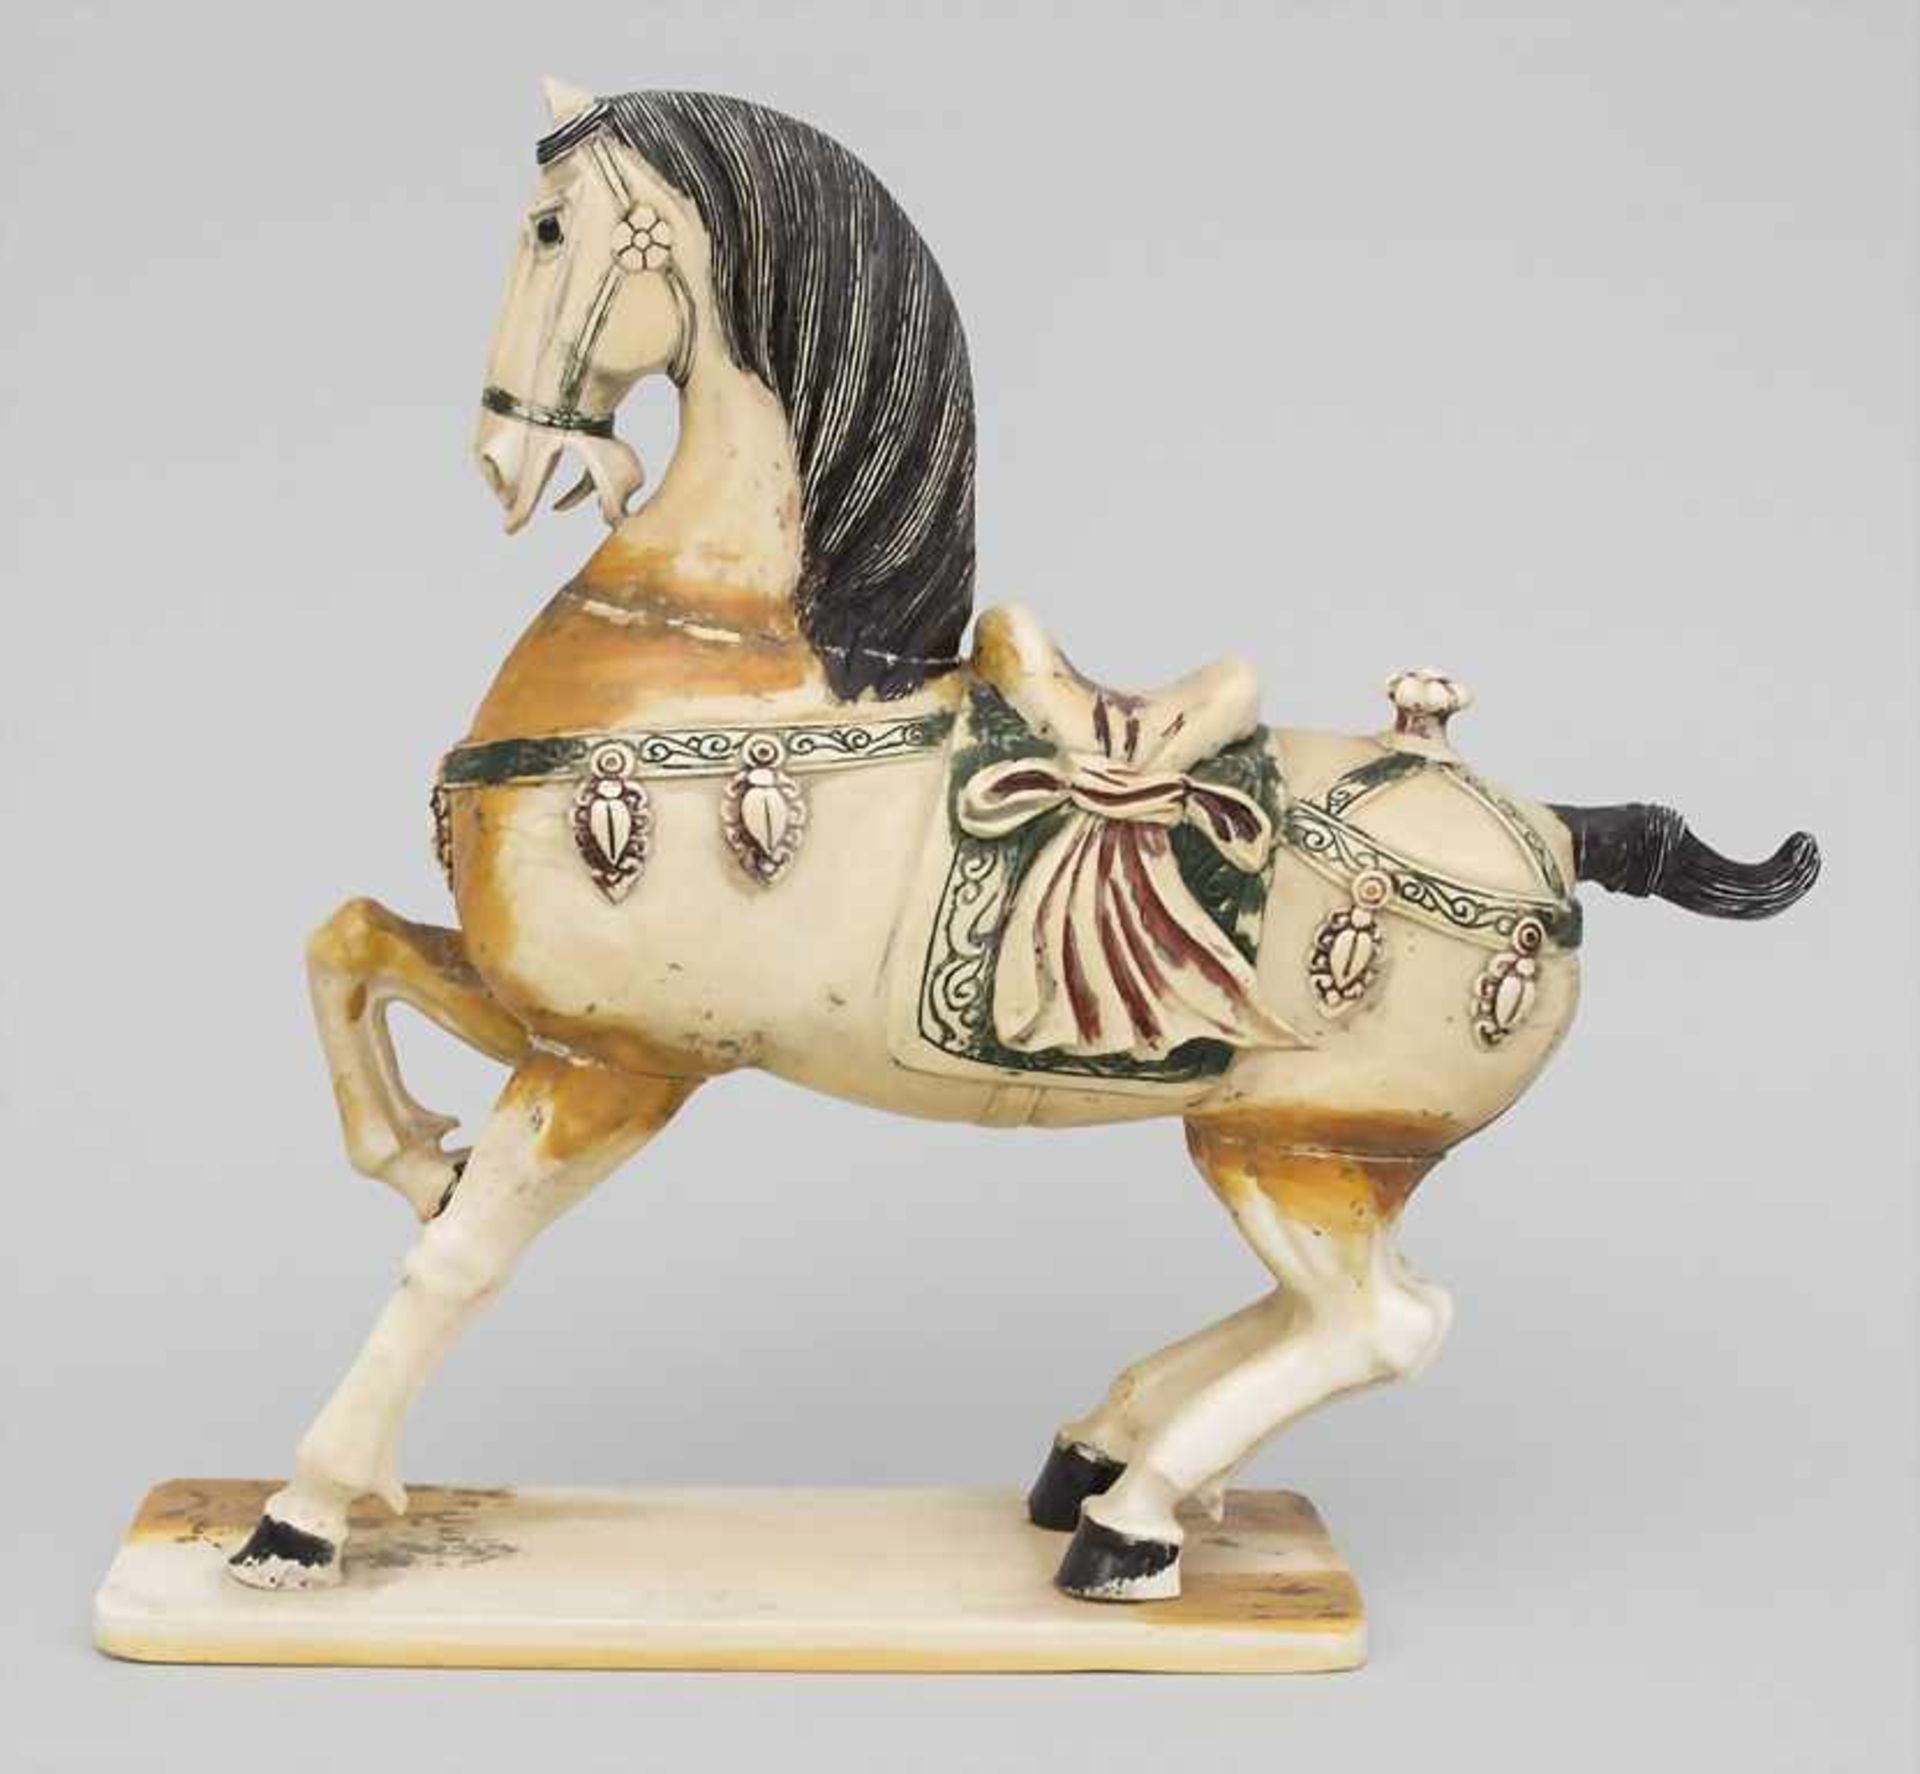 Tierfigur 'Pferd' / An animal figure 'Horse', China, 18. / 19. Jh. - Bild 2 aus 7